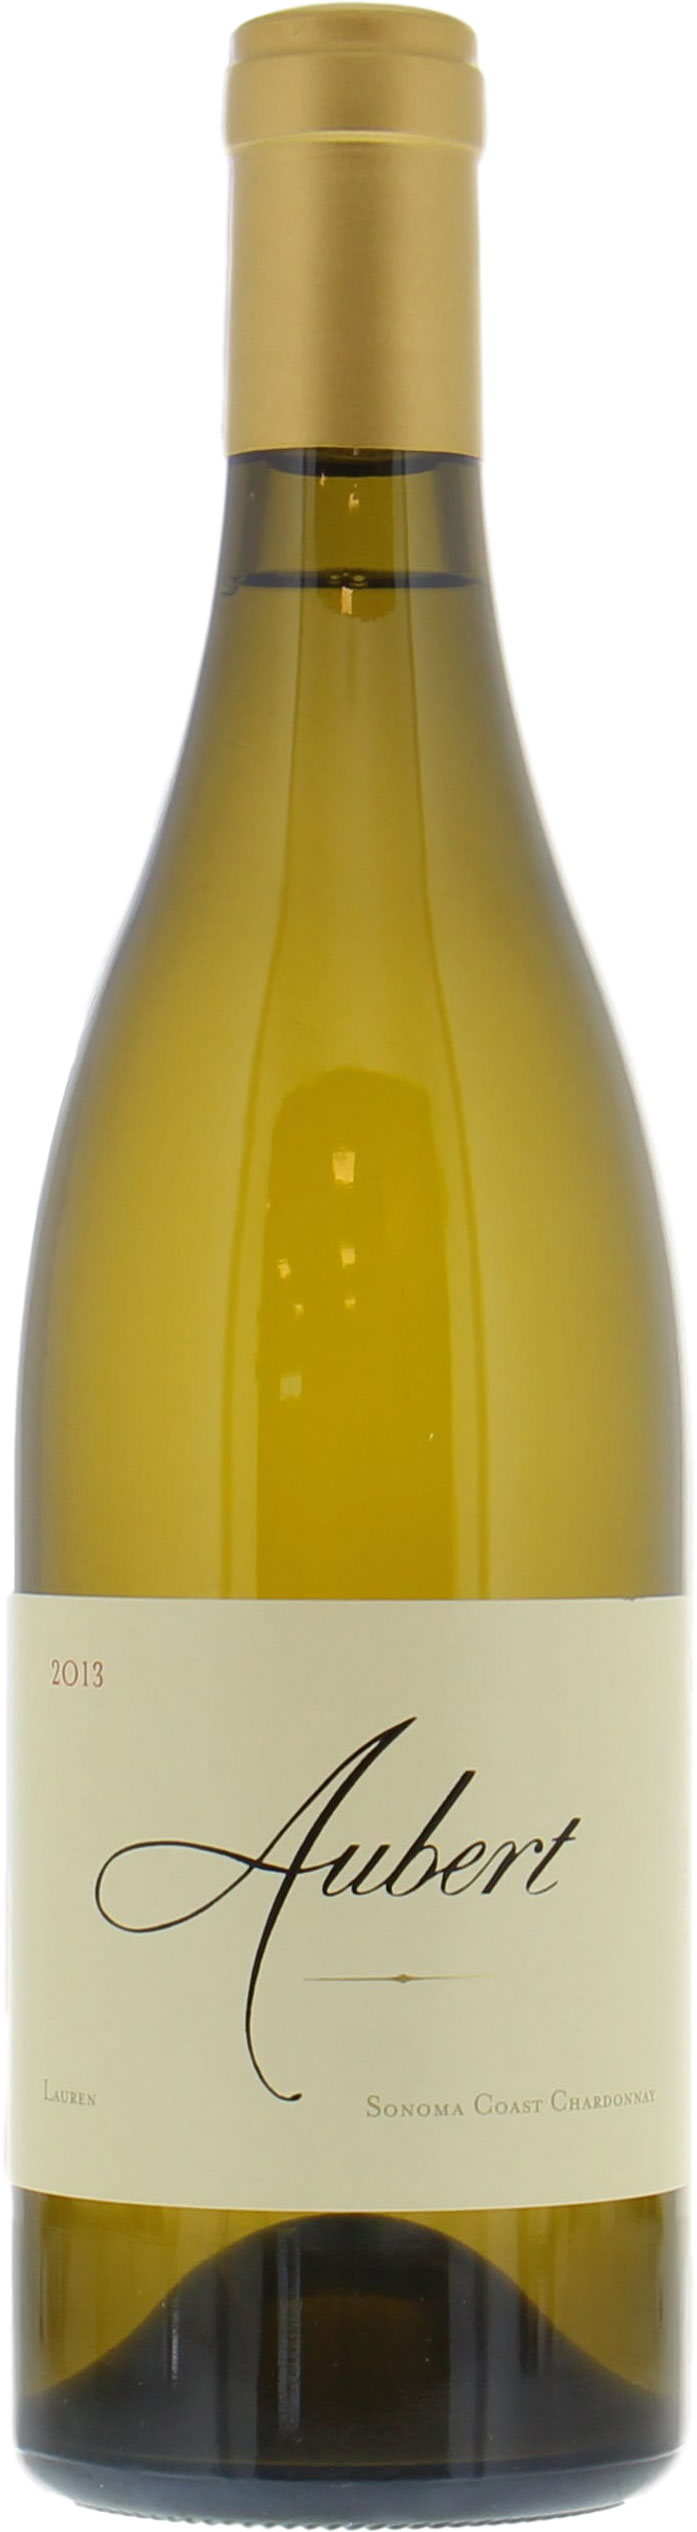 Aubert - Chardonnay Lauren Vineyard 2013